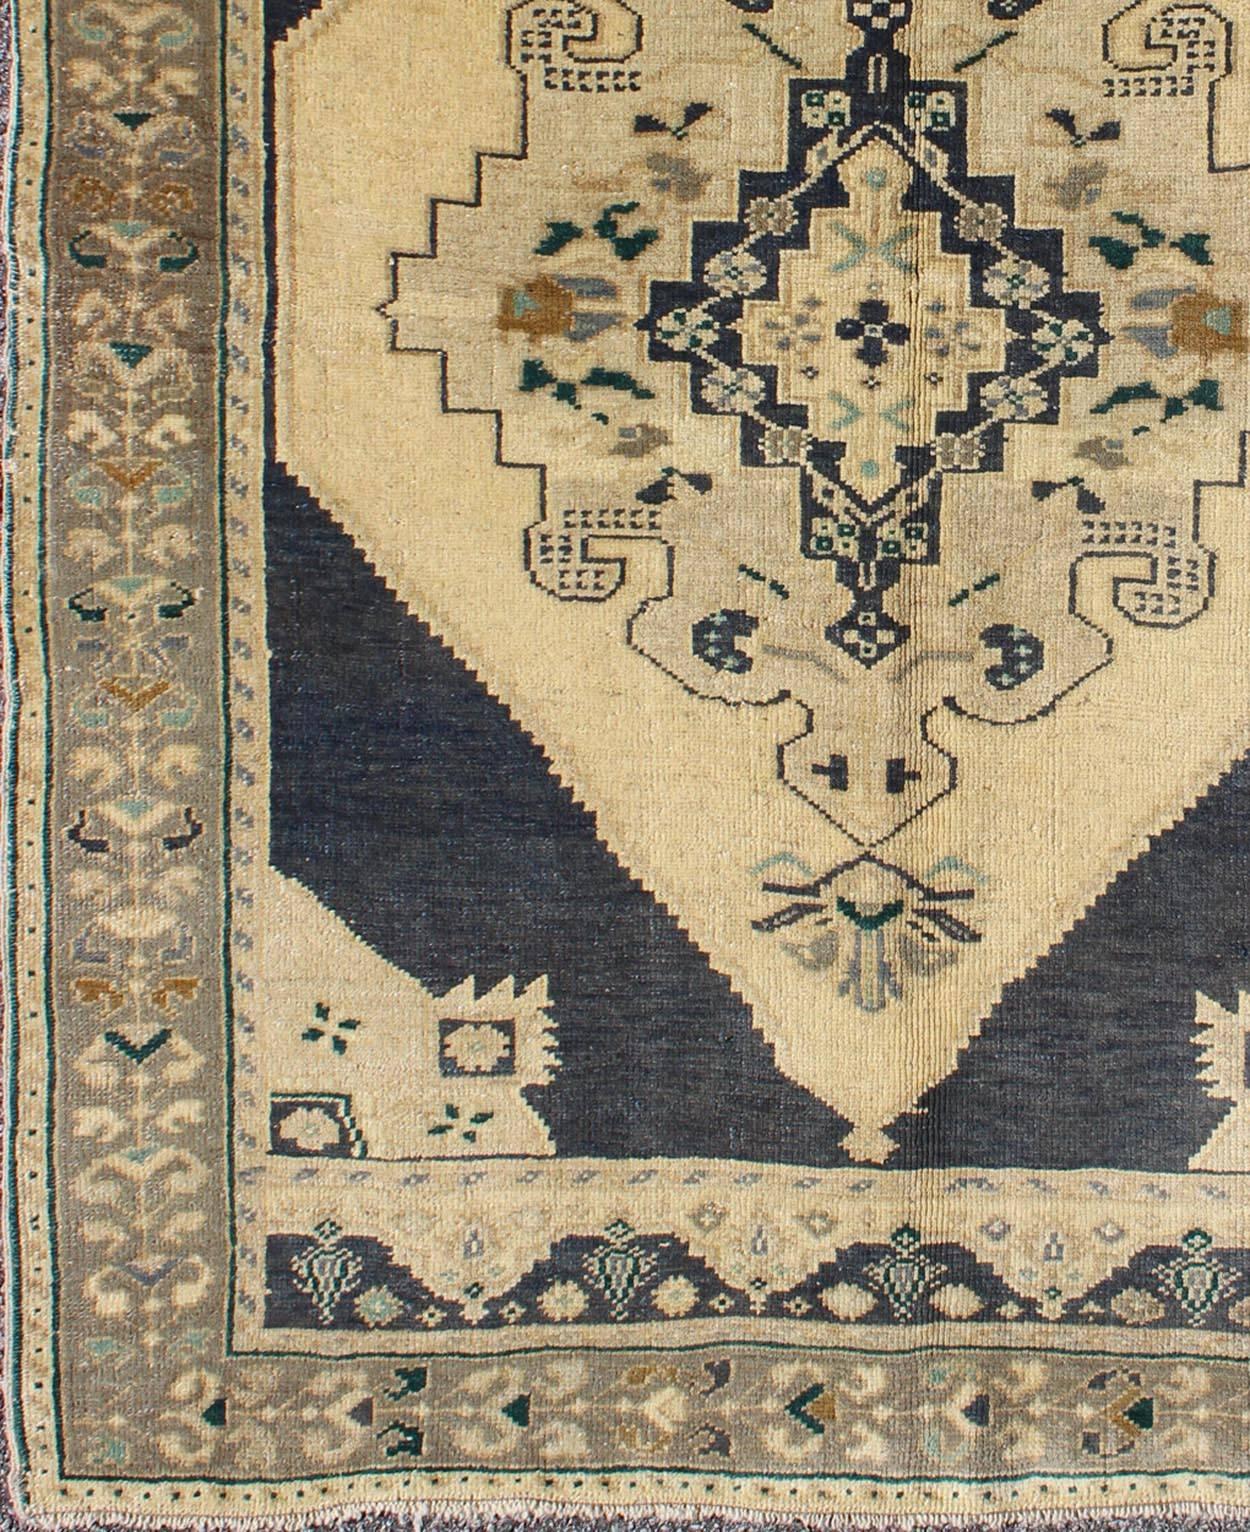 Türkischer Oushak-Teppich mit stilisiertem Medaillon in nachtblau und cremefarben, Teppich de-112153, Herkunftsland / Art: Türkei / Oushak, um 1940

Dieser türkische Oushak-Teppich aus der Zeit um 1940 zeichnet sich durch ein wunderschönes und hoch